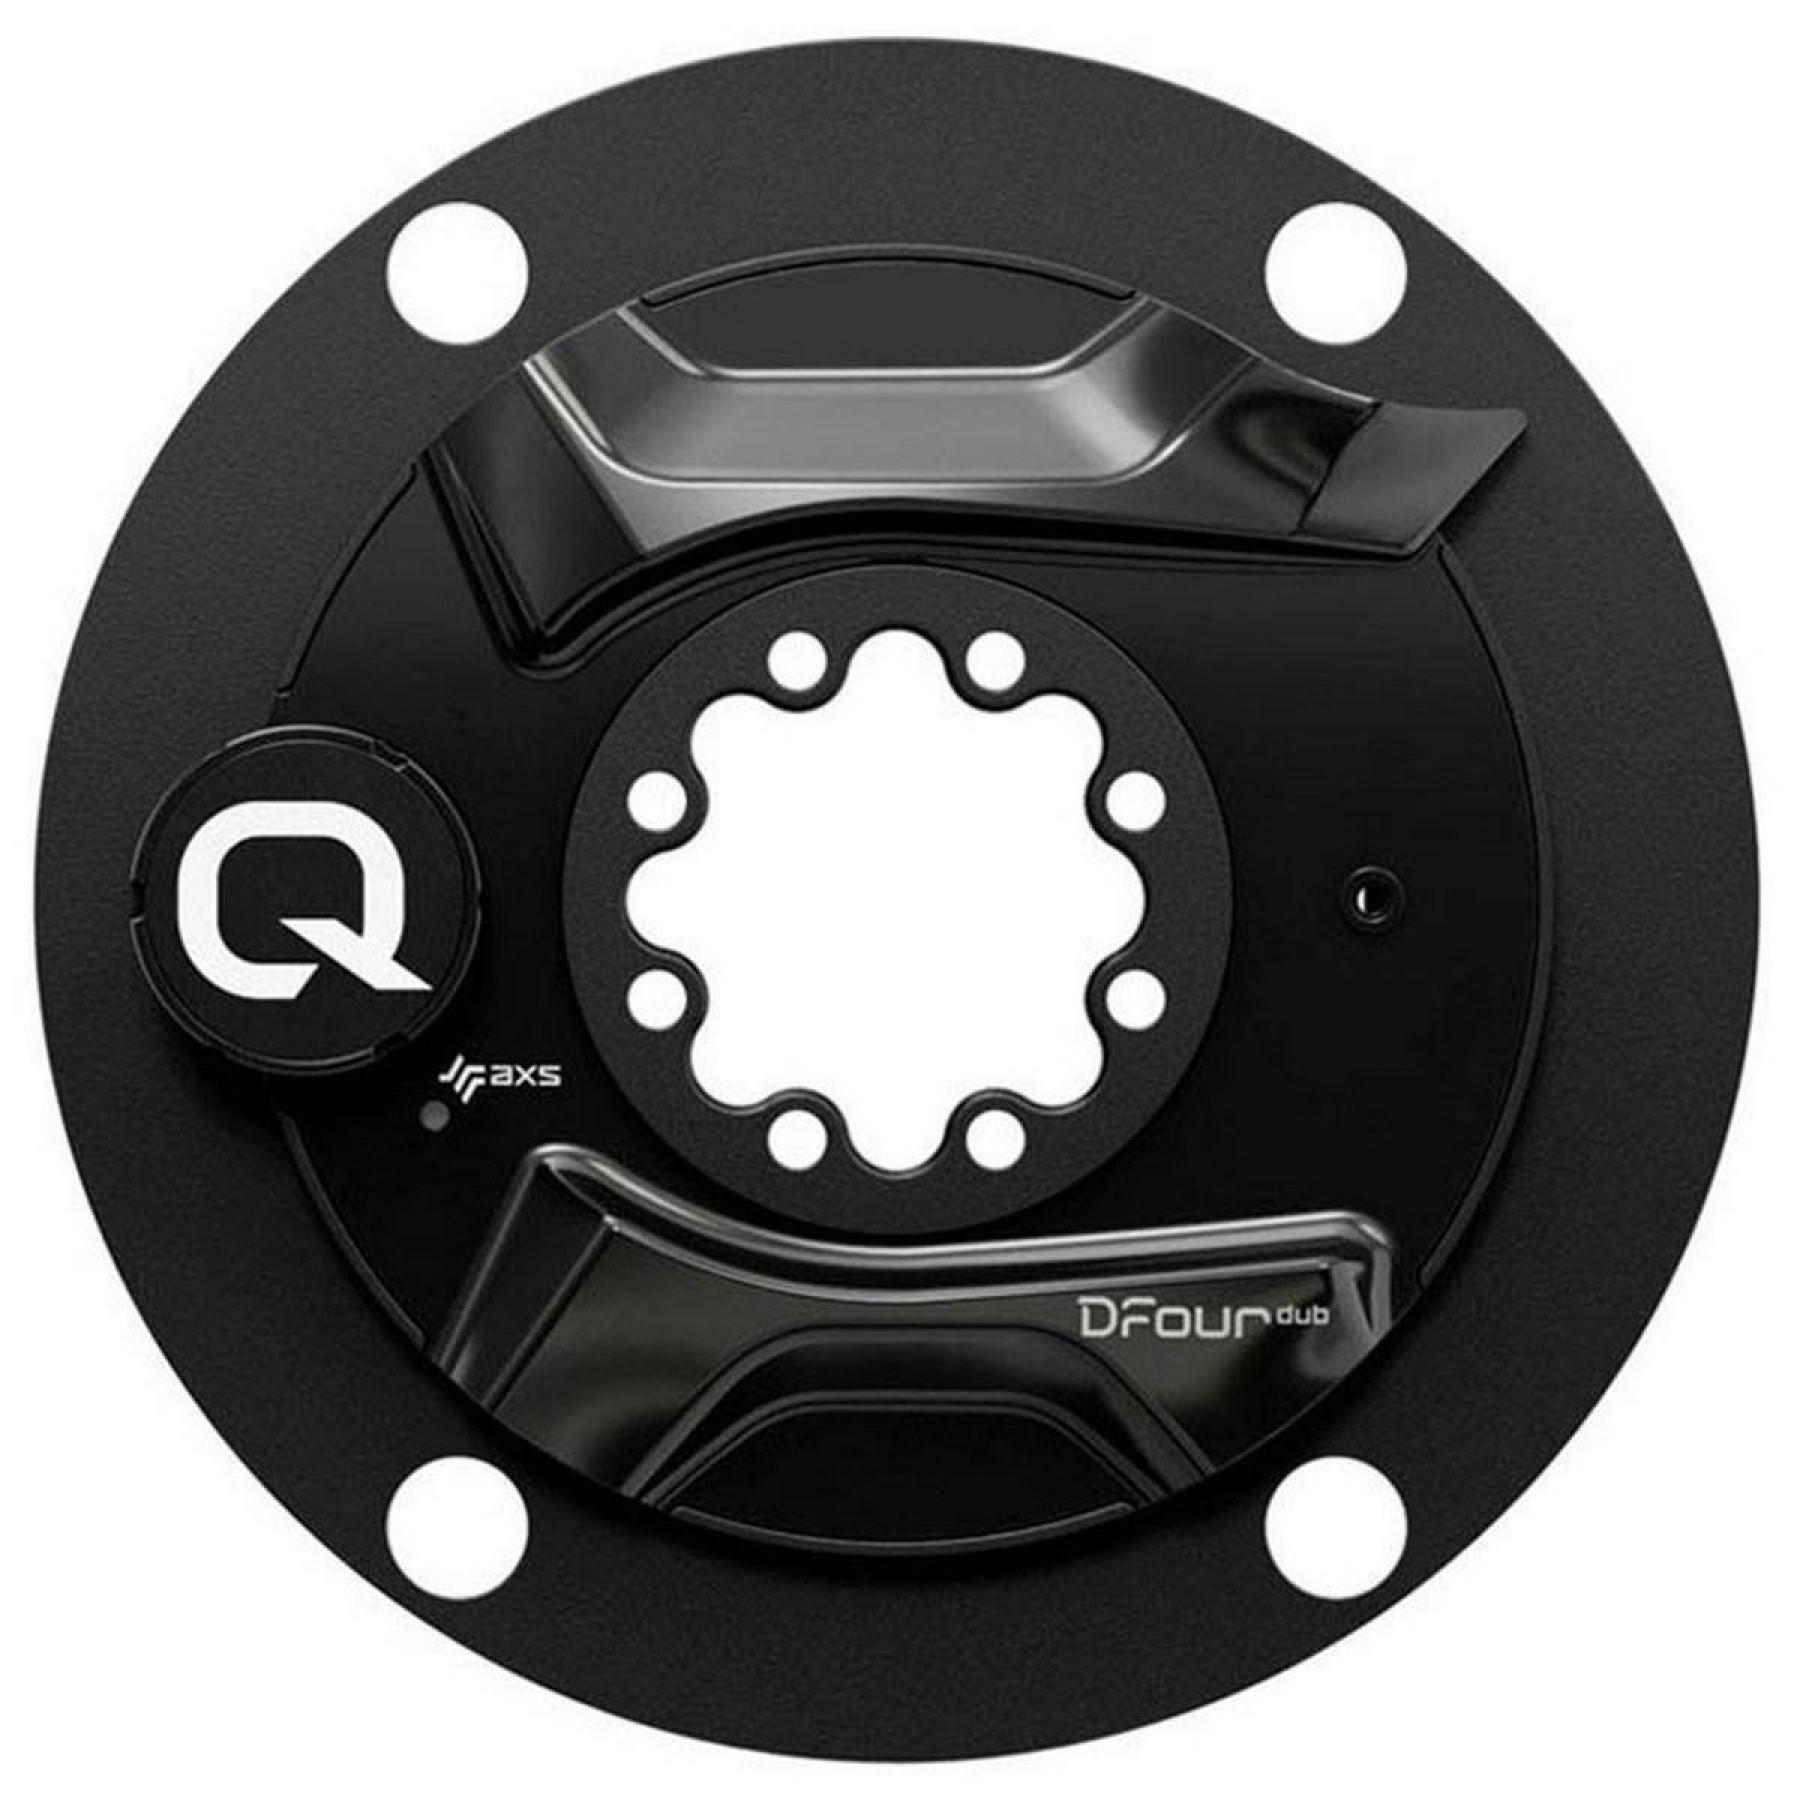 Sensor de potencia Quarq Dfour dub 170mm 110BCD Shimano (BB not in)